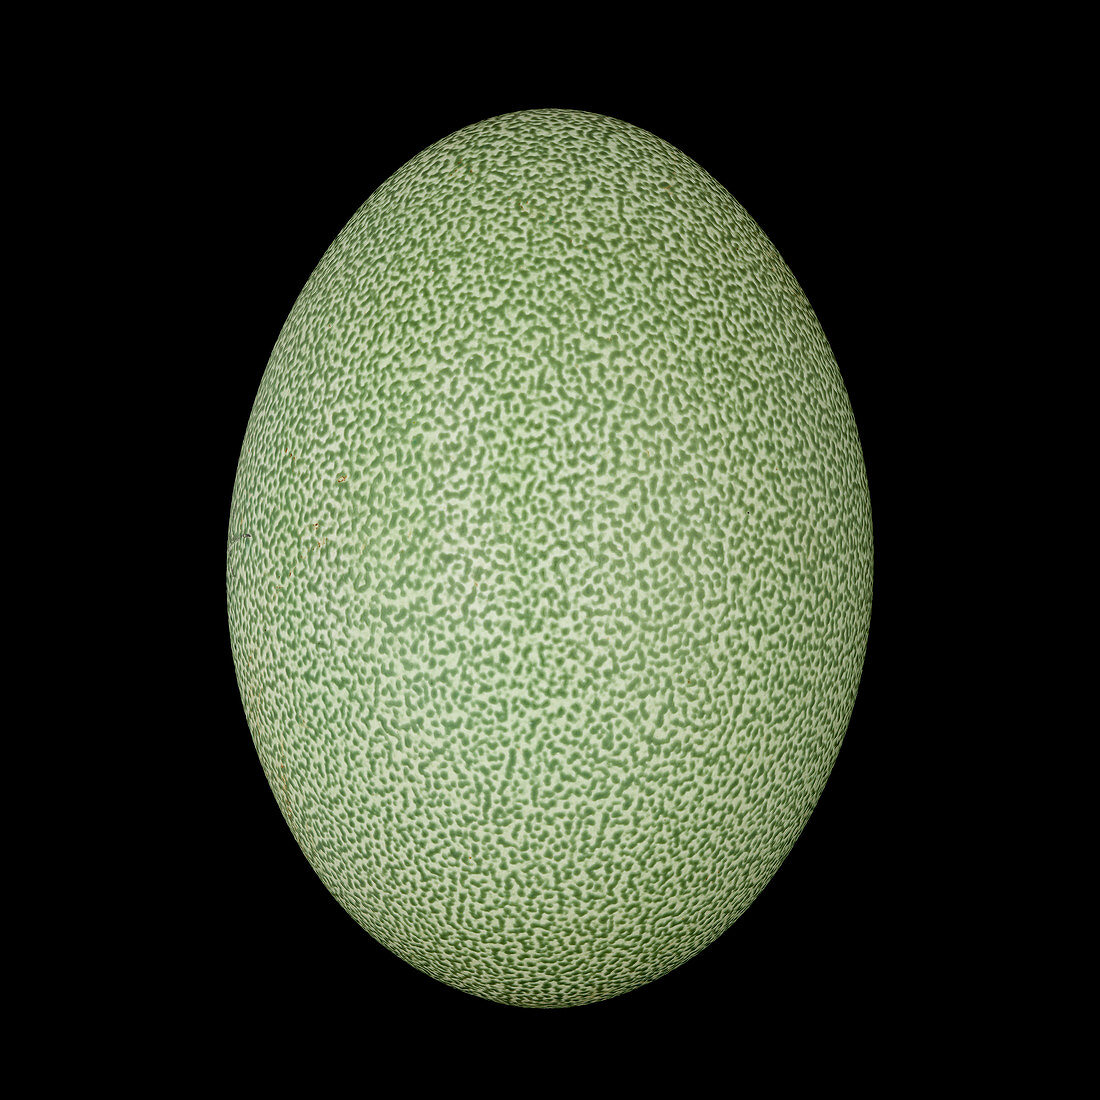 Cassowary egg